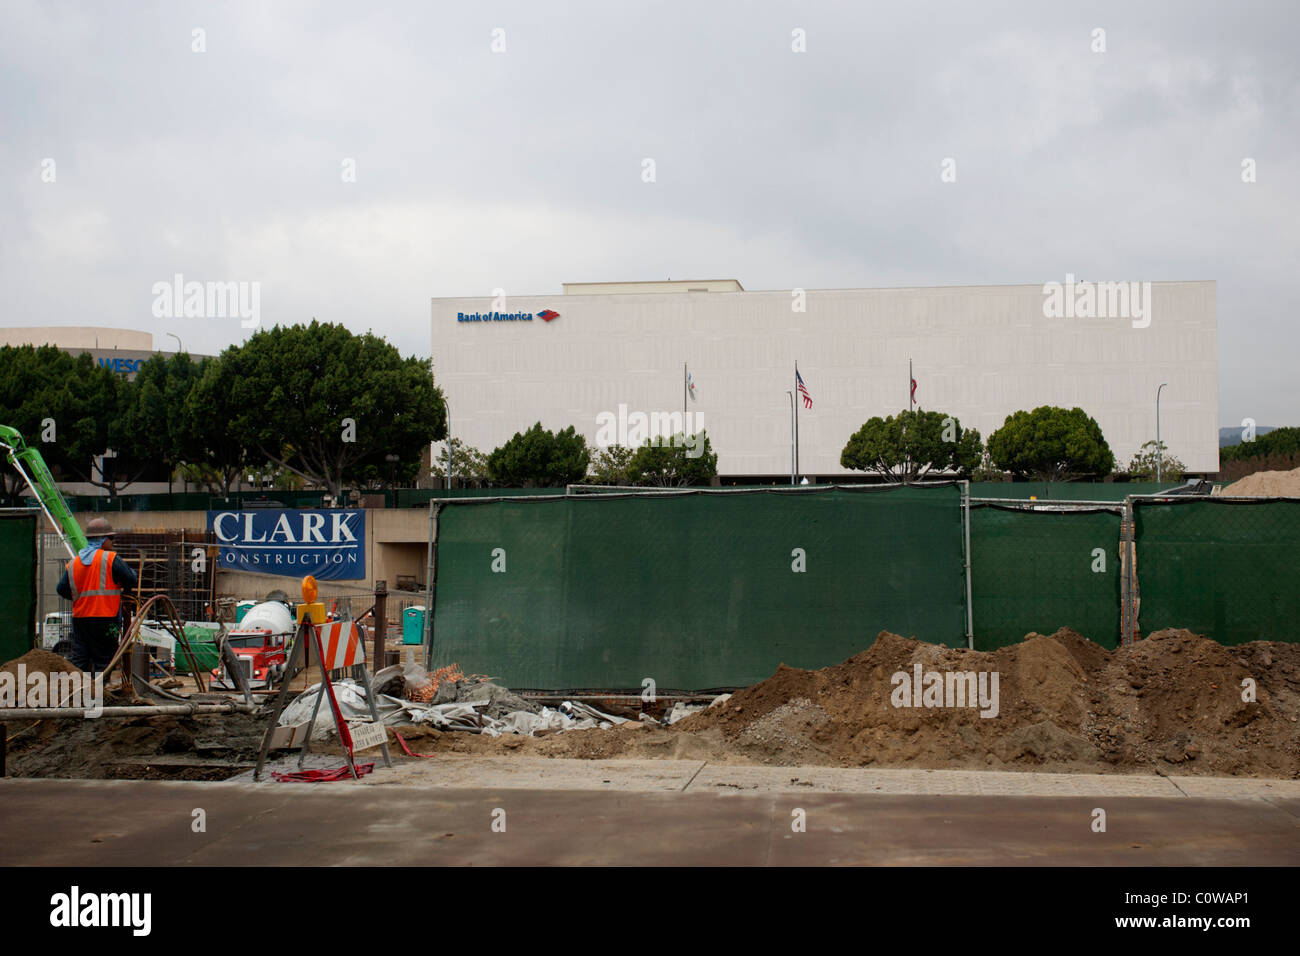 Breite Schuss eines Gebäudes der Bank of America mit Clark Bau Arbeit statt im Vordergrund, Los Angeles, USA. Stockfoto